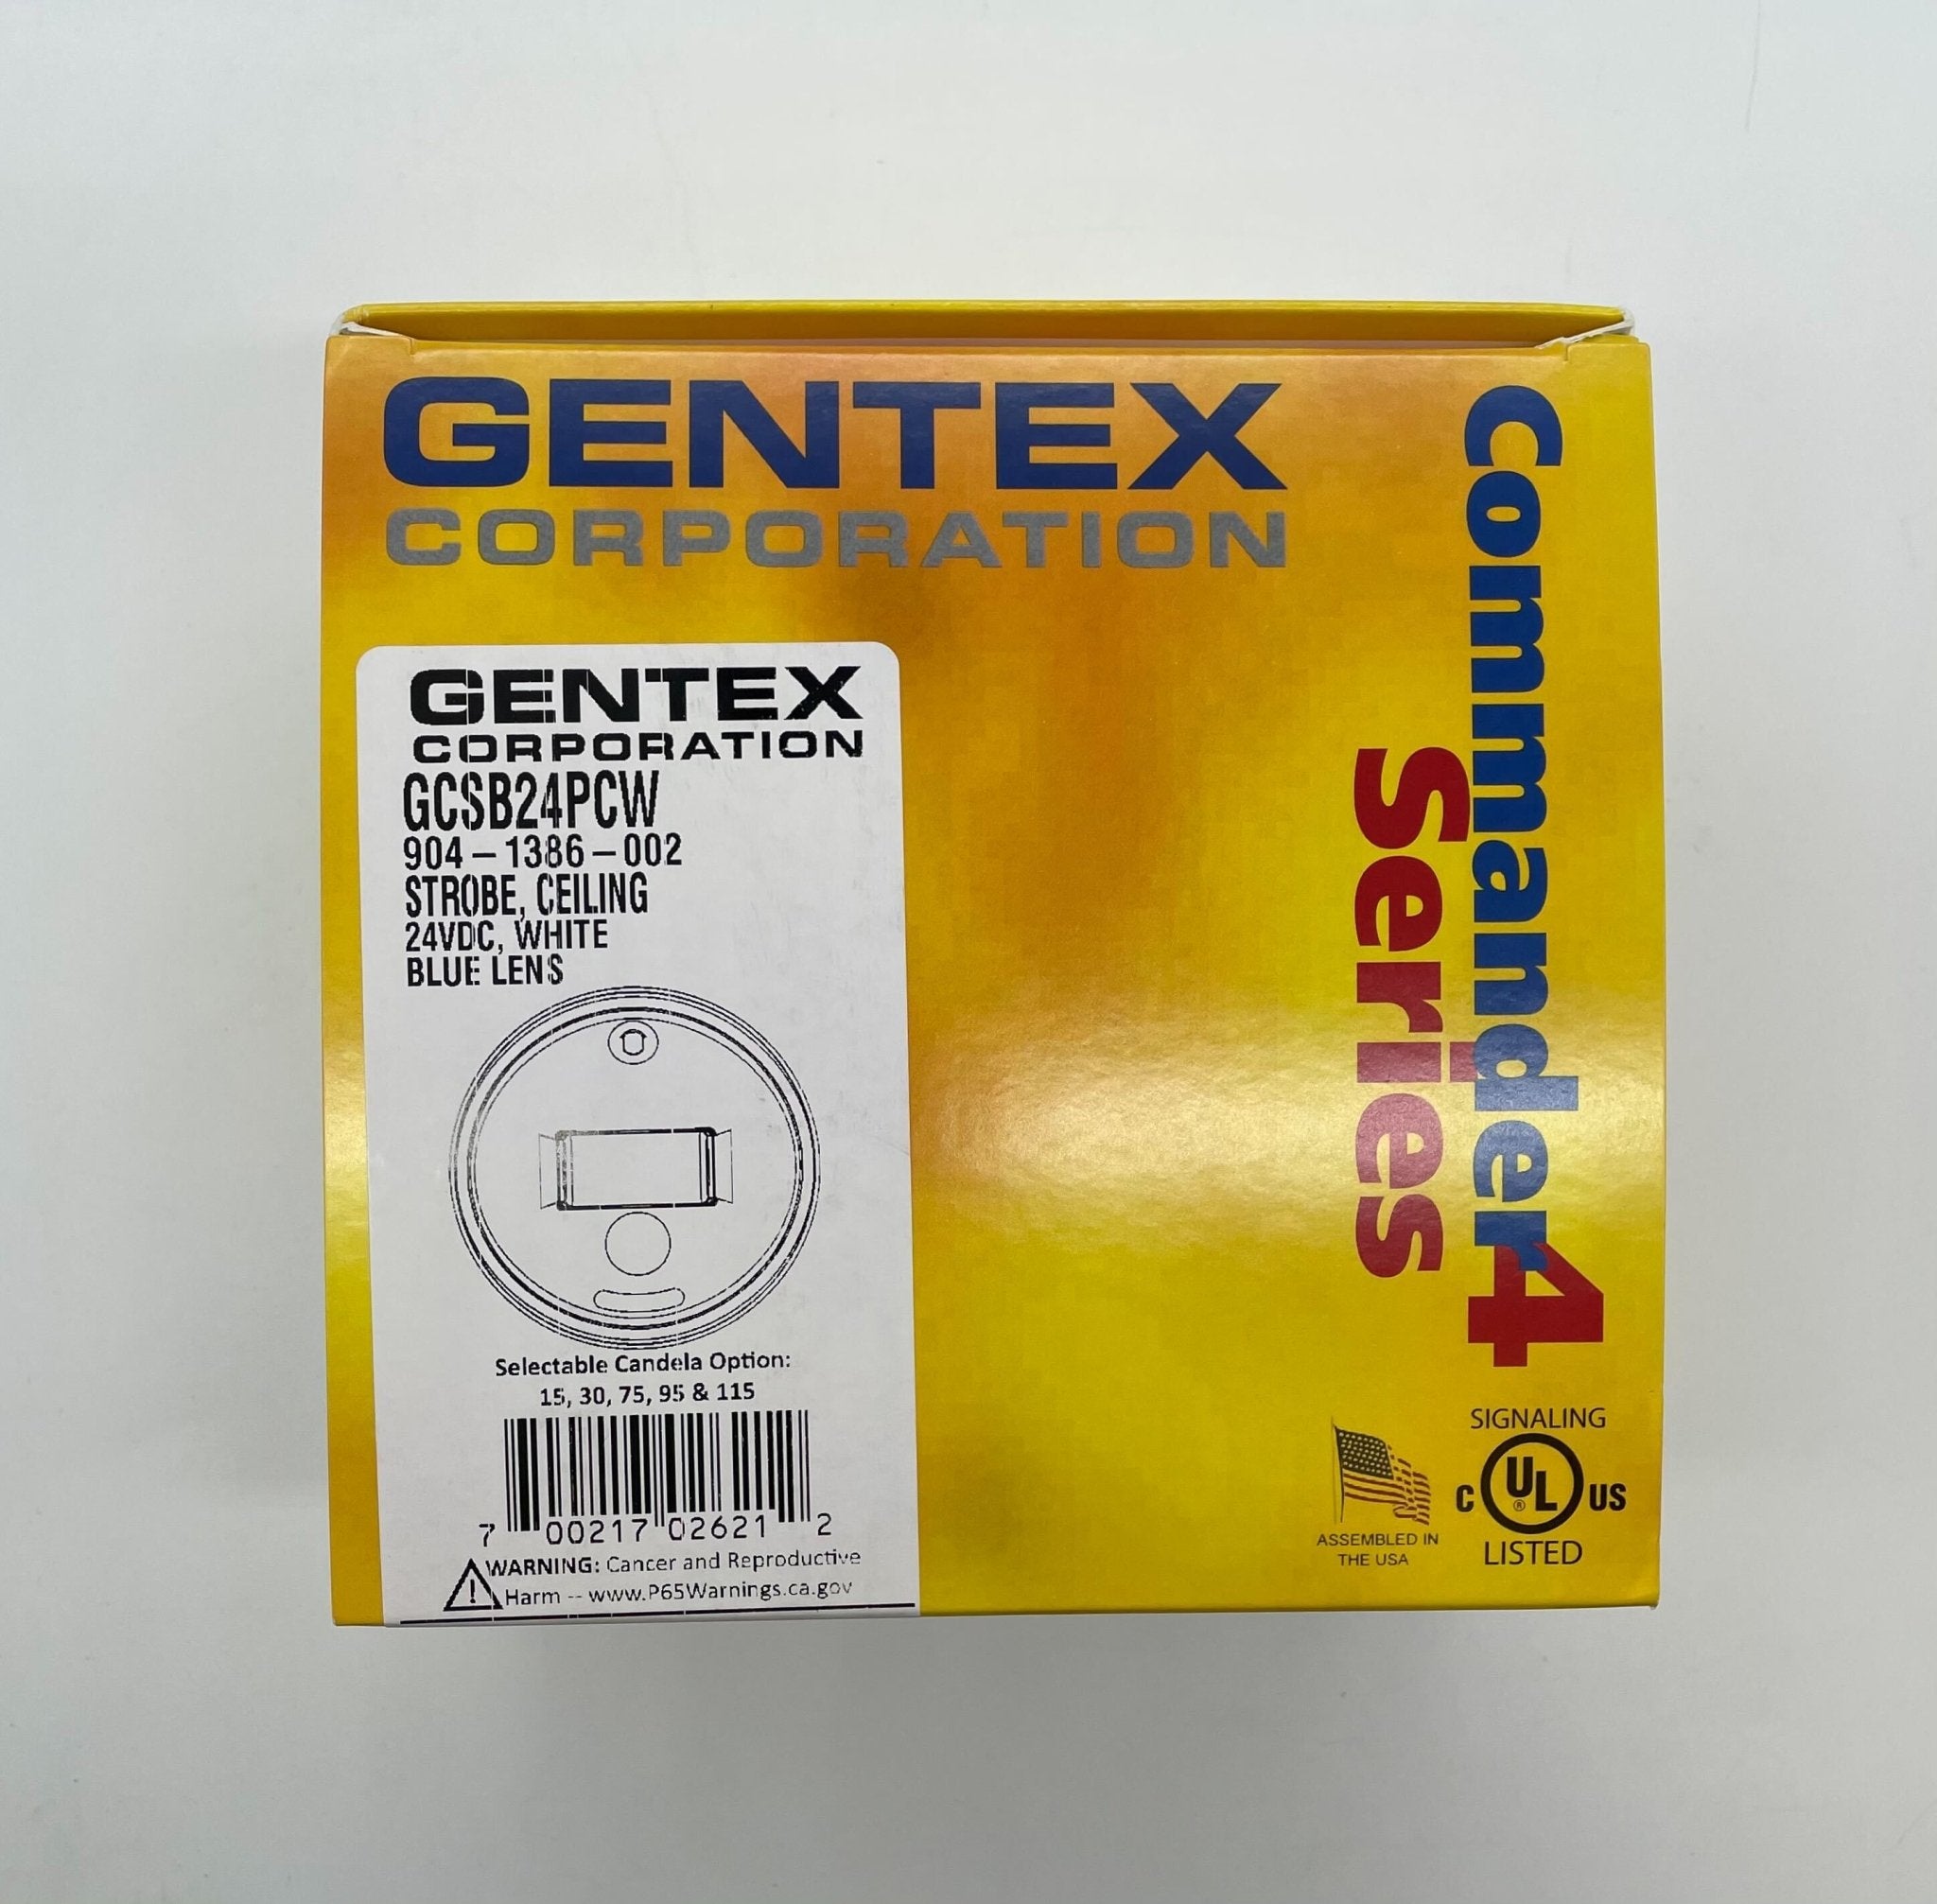 Gentex GCSB24PCW - The Fire Alarm Supplier